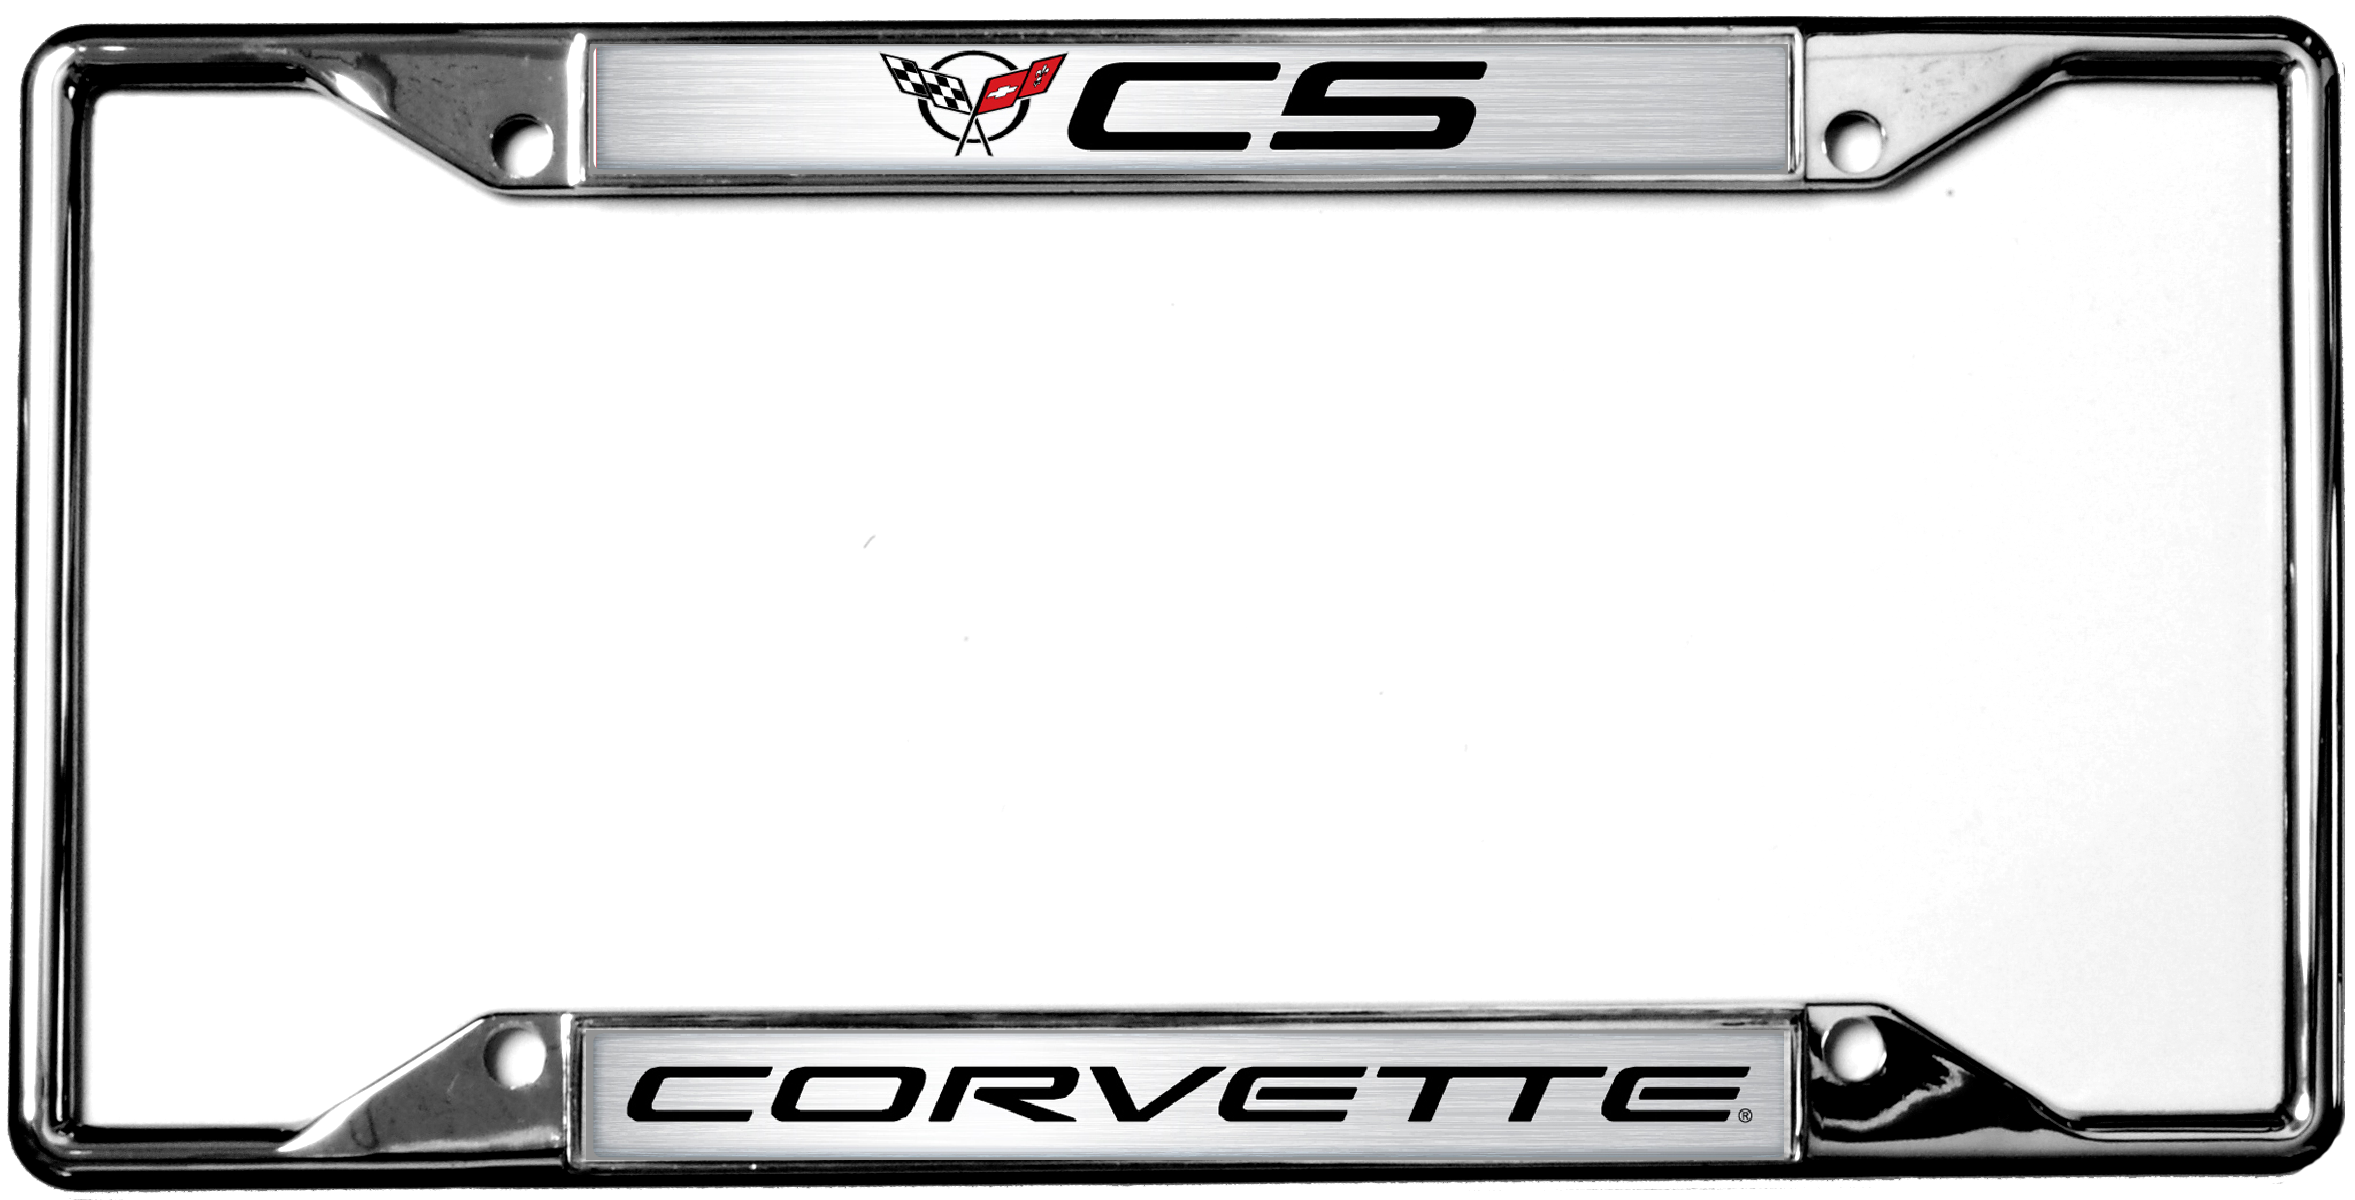 Eurosport Daytona 6350DL-1 Small Insert License Plate - for Chevy Corvette